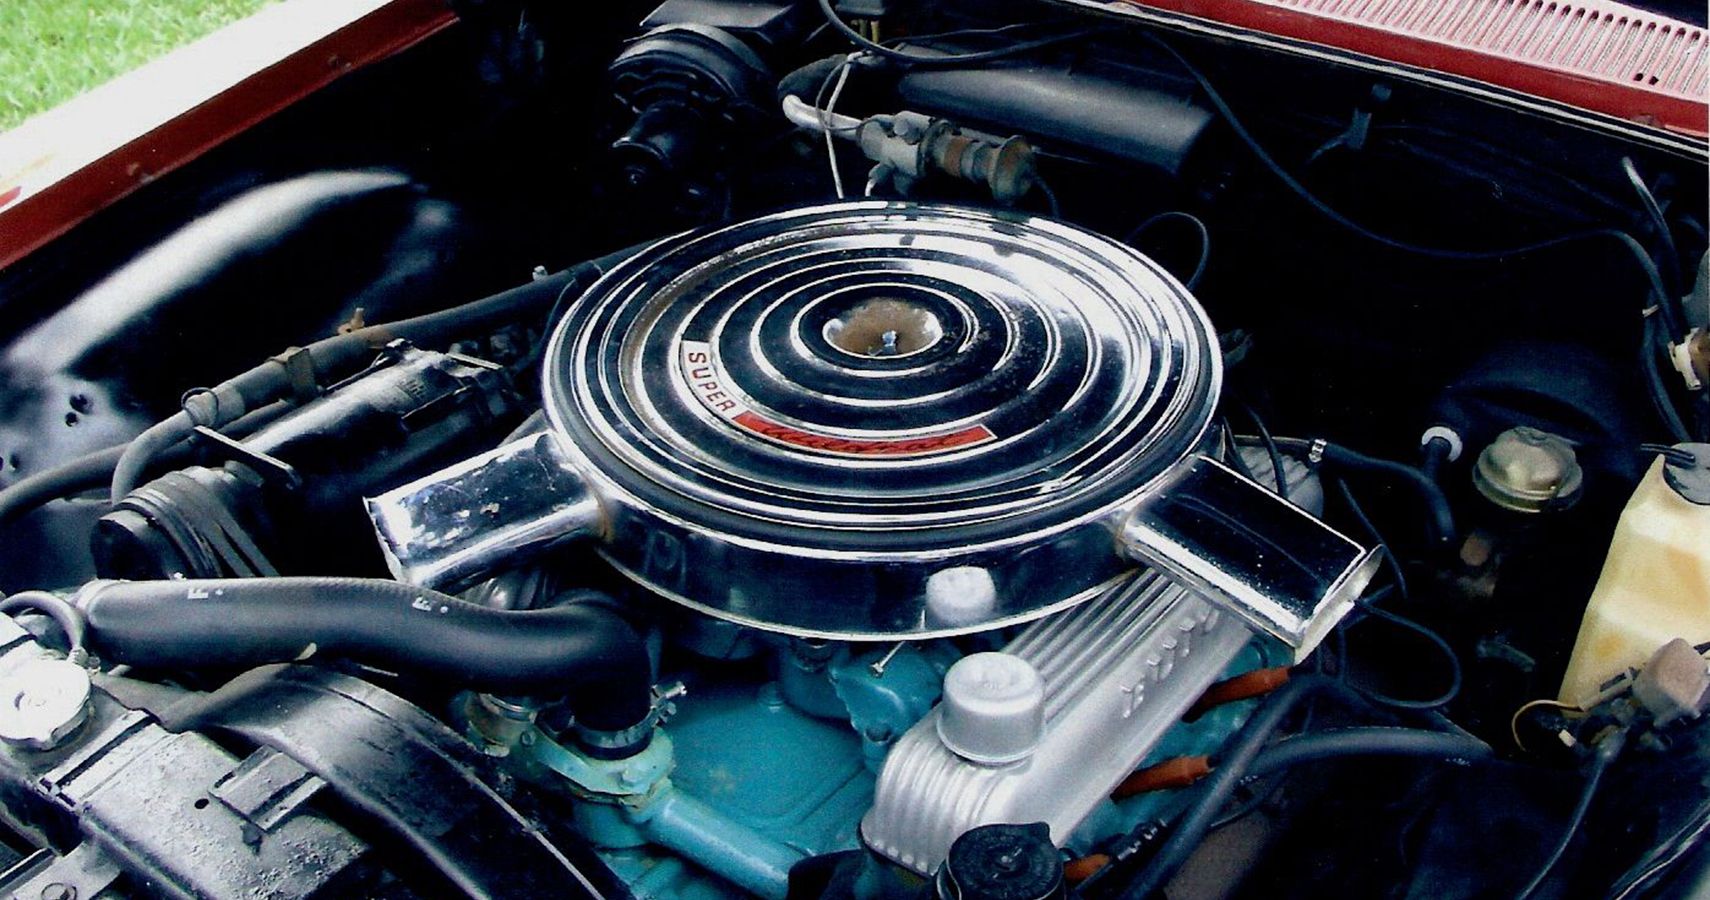 1966 Buick Wildcat 425 Nailhead V8 Engine Bay